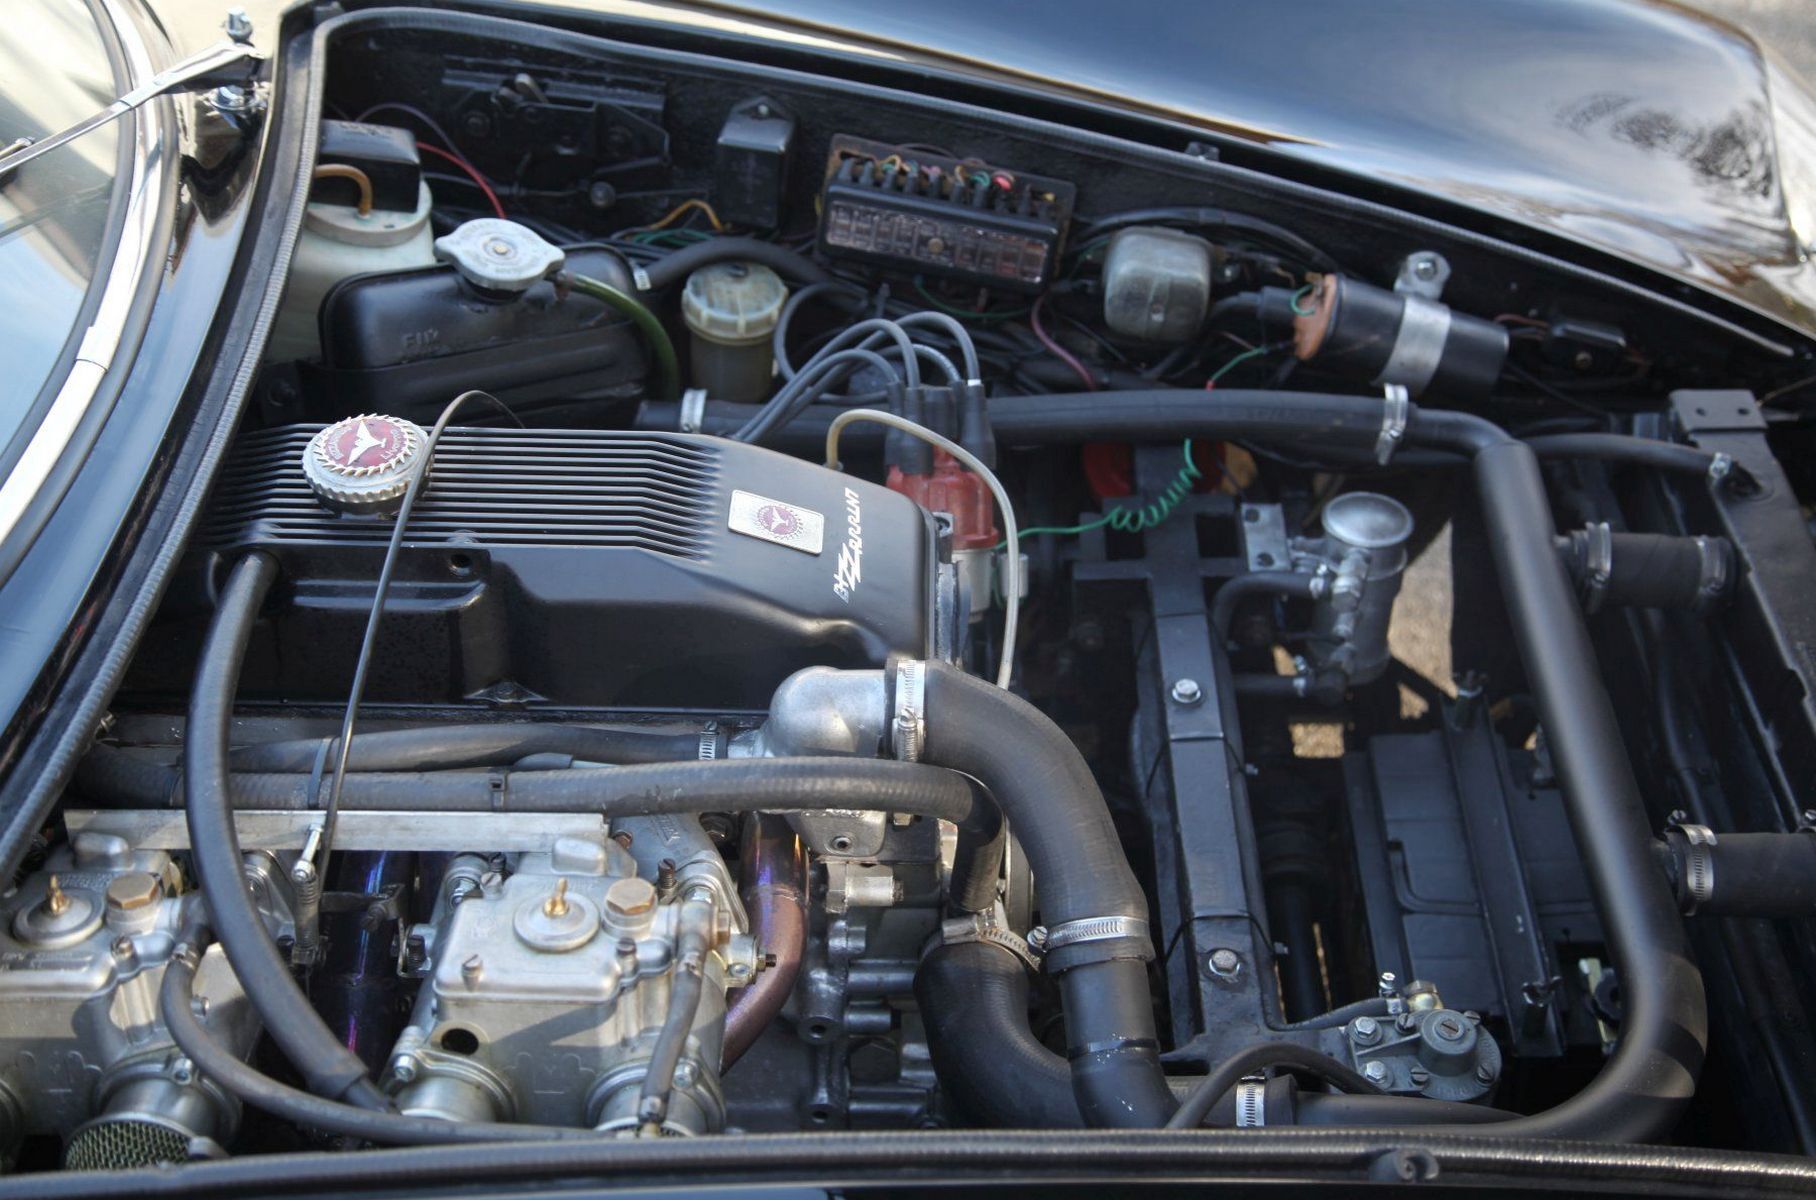 Под капотом — четырёхцилиндровый двигатель Opel с горизонтальными карбюраторами Weber